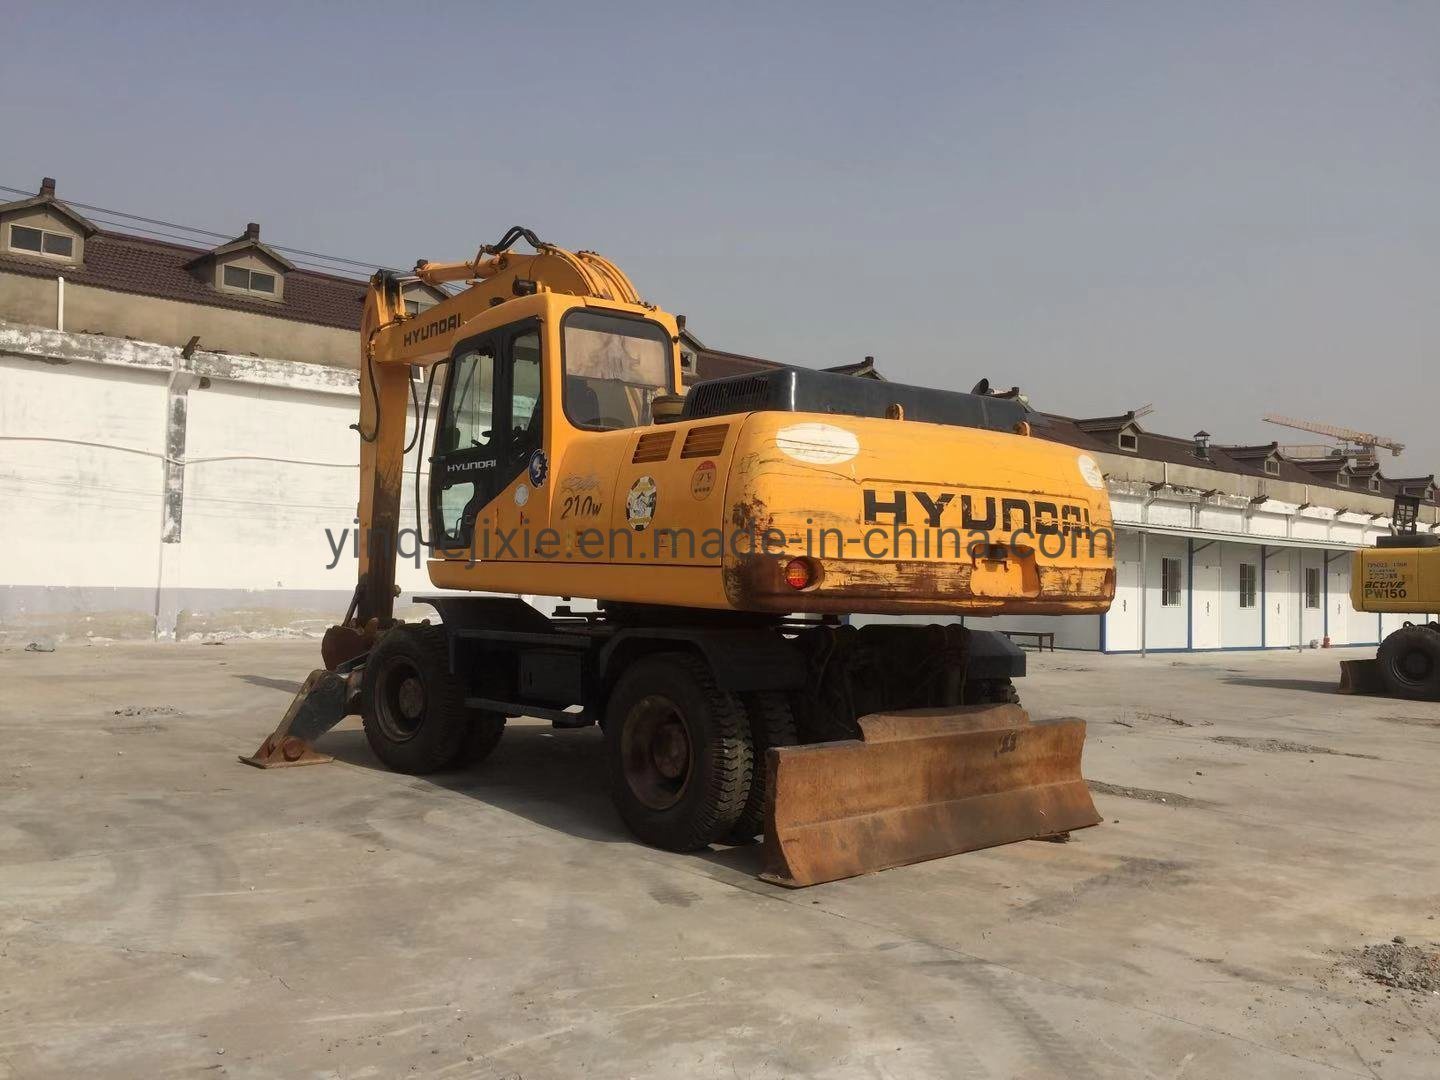 
                Usadas de excavadora de ruedas Hyundai Hyundai 200W con los neumáticos la excavadora Excavadora de ruedas de 20 ton.
            